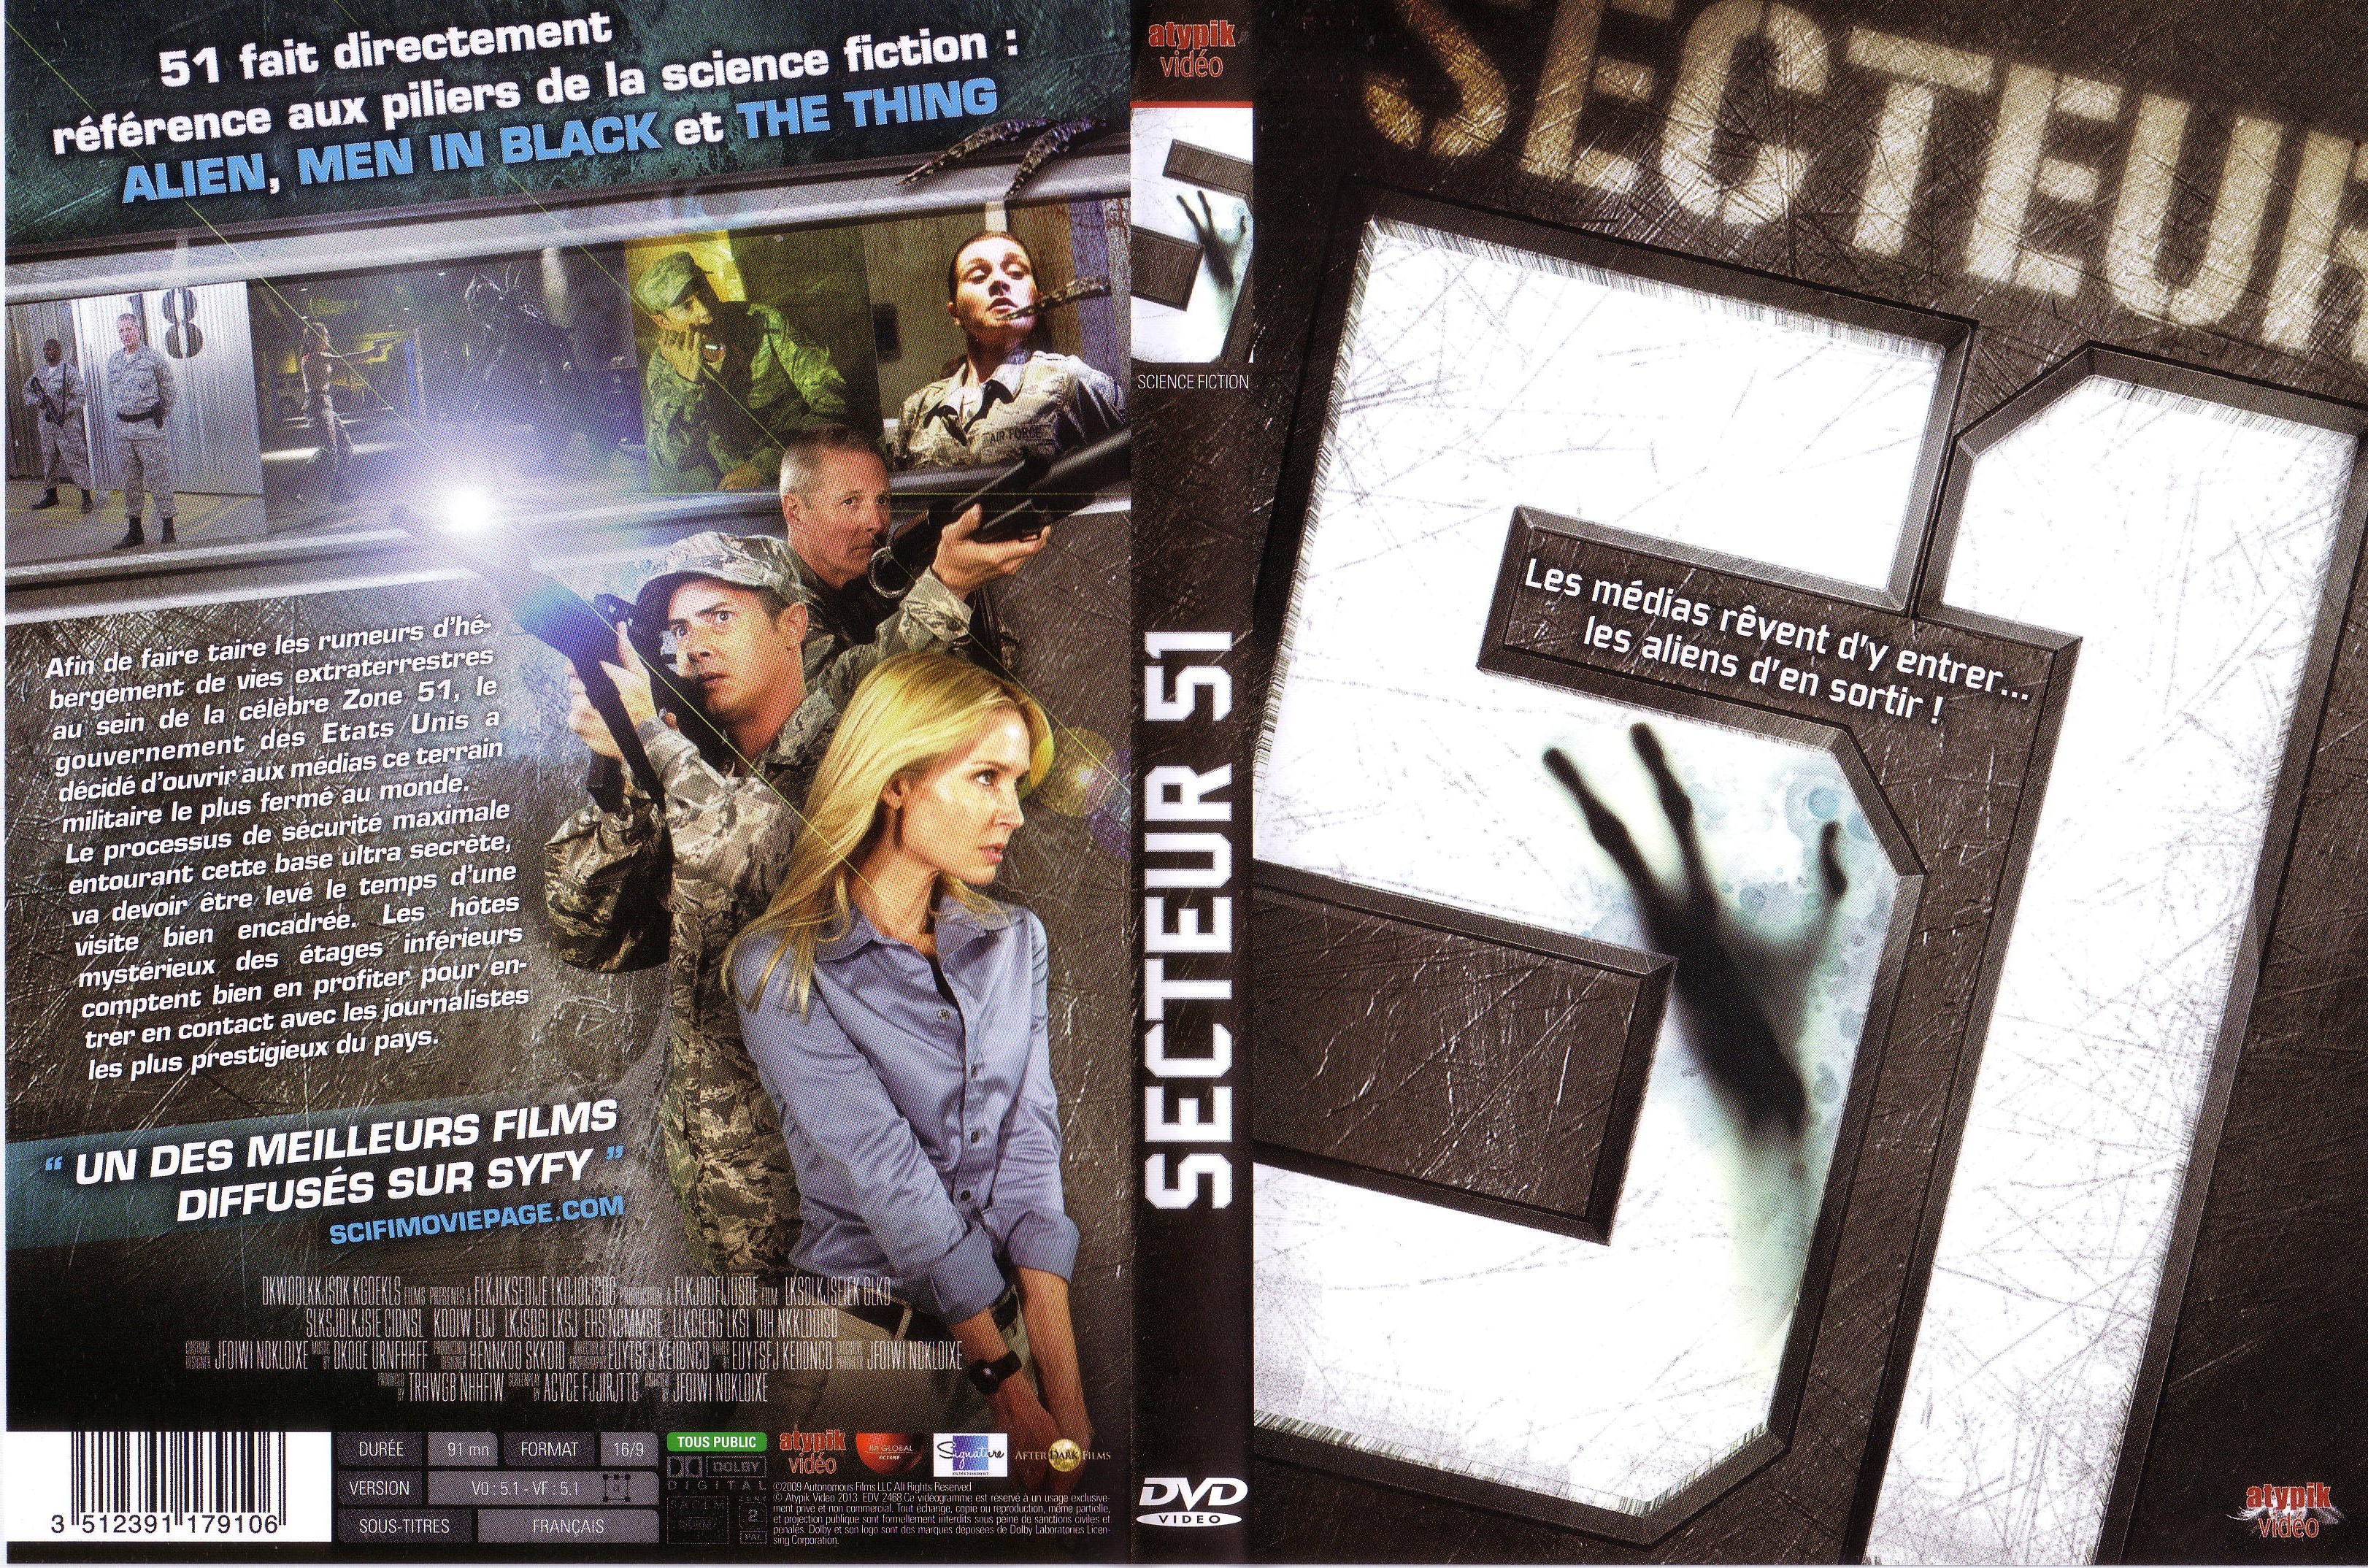 Jaquette DVD Secteur 51